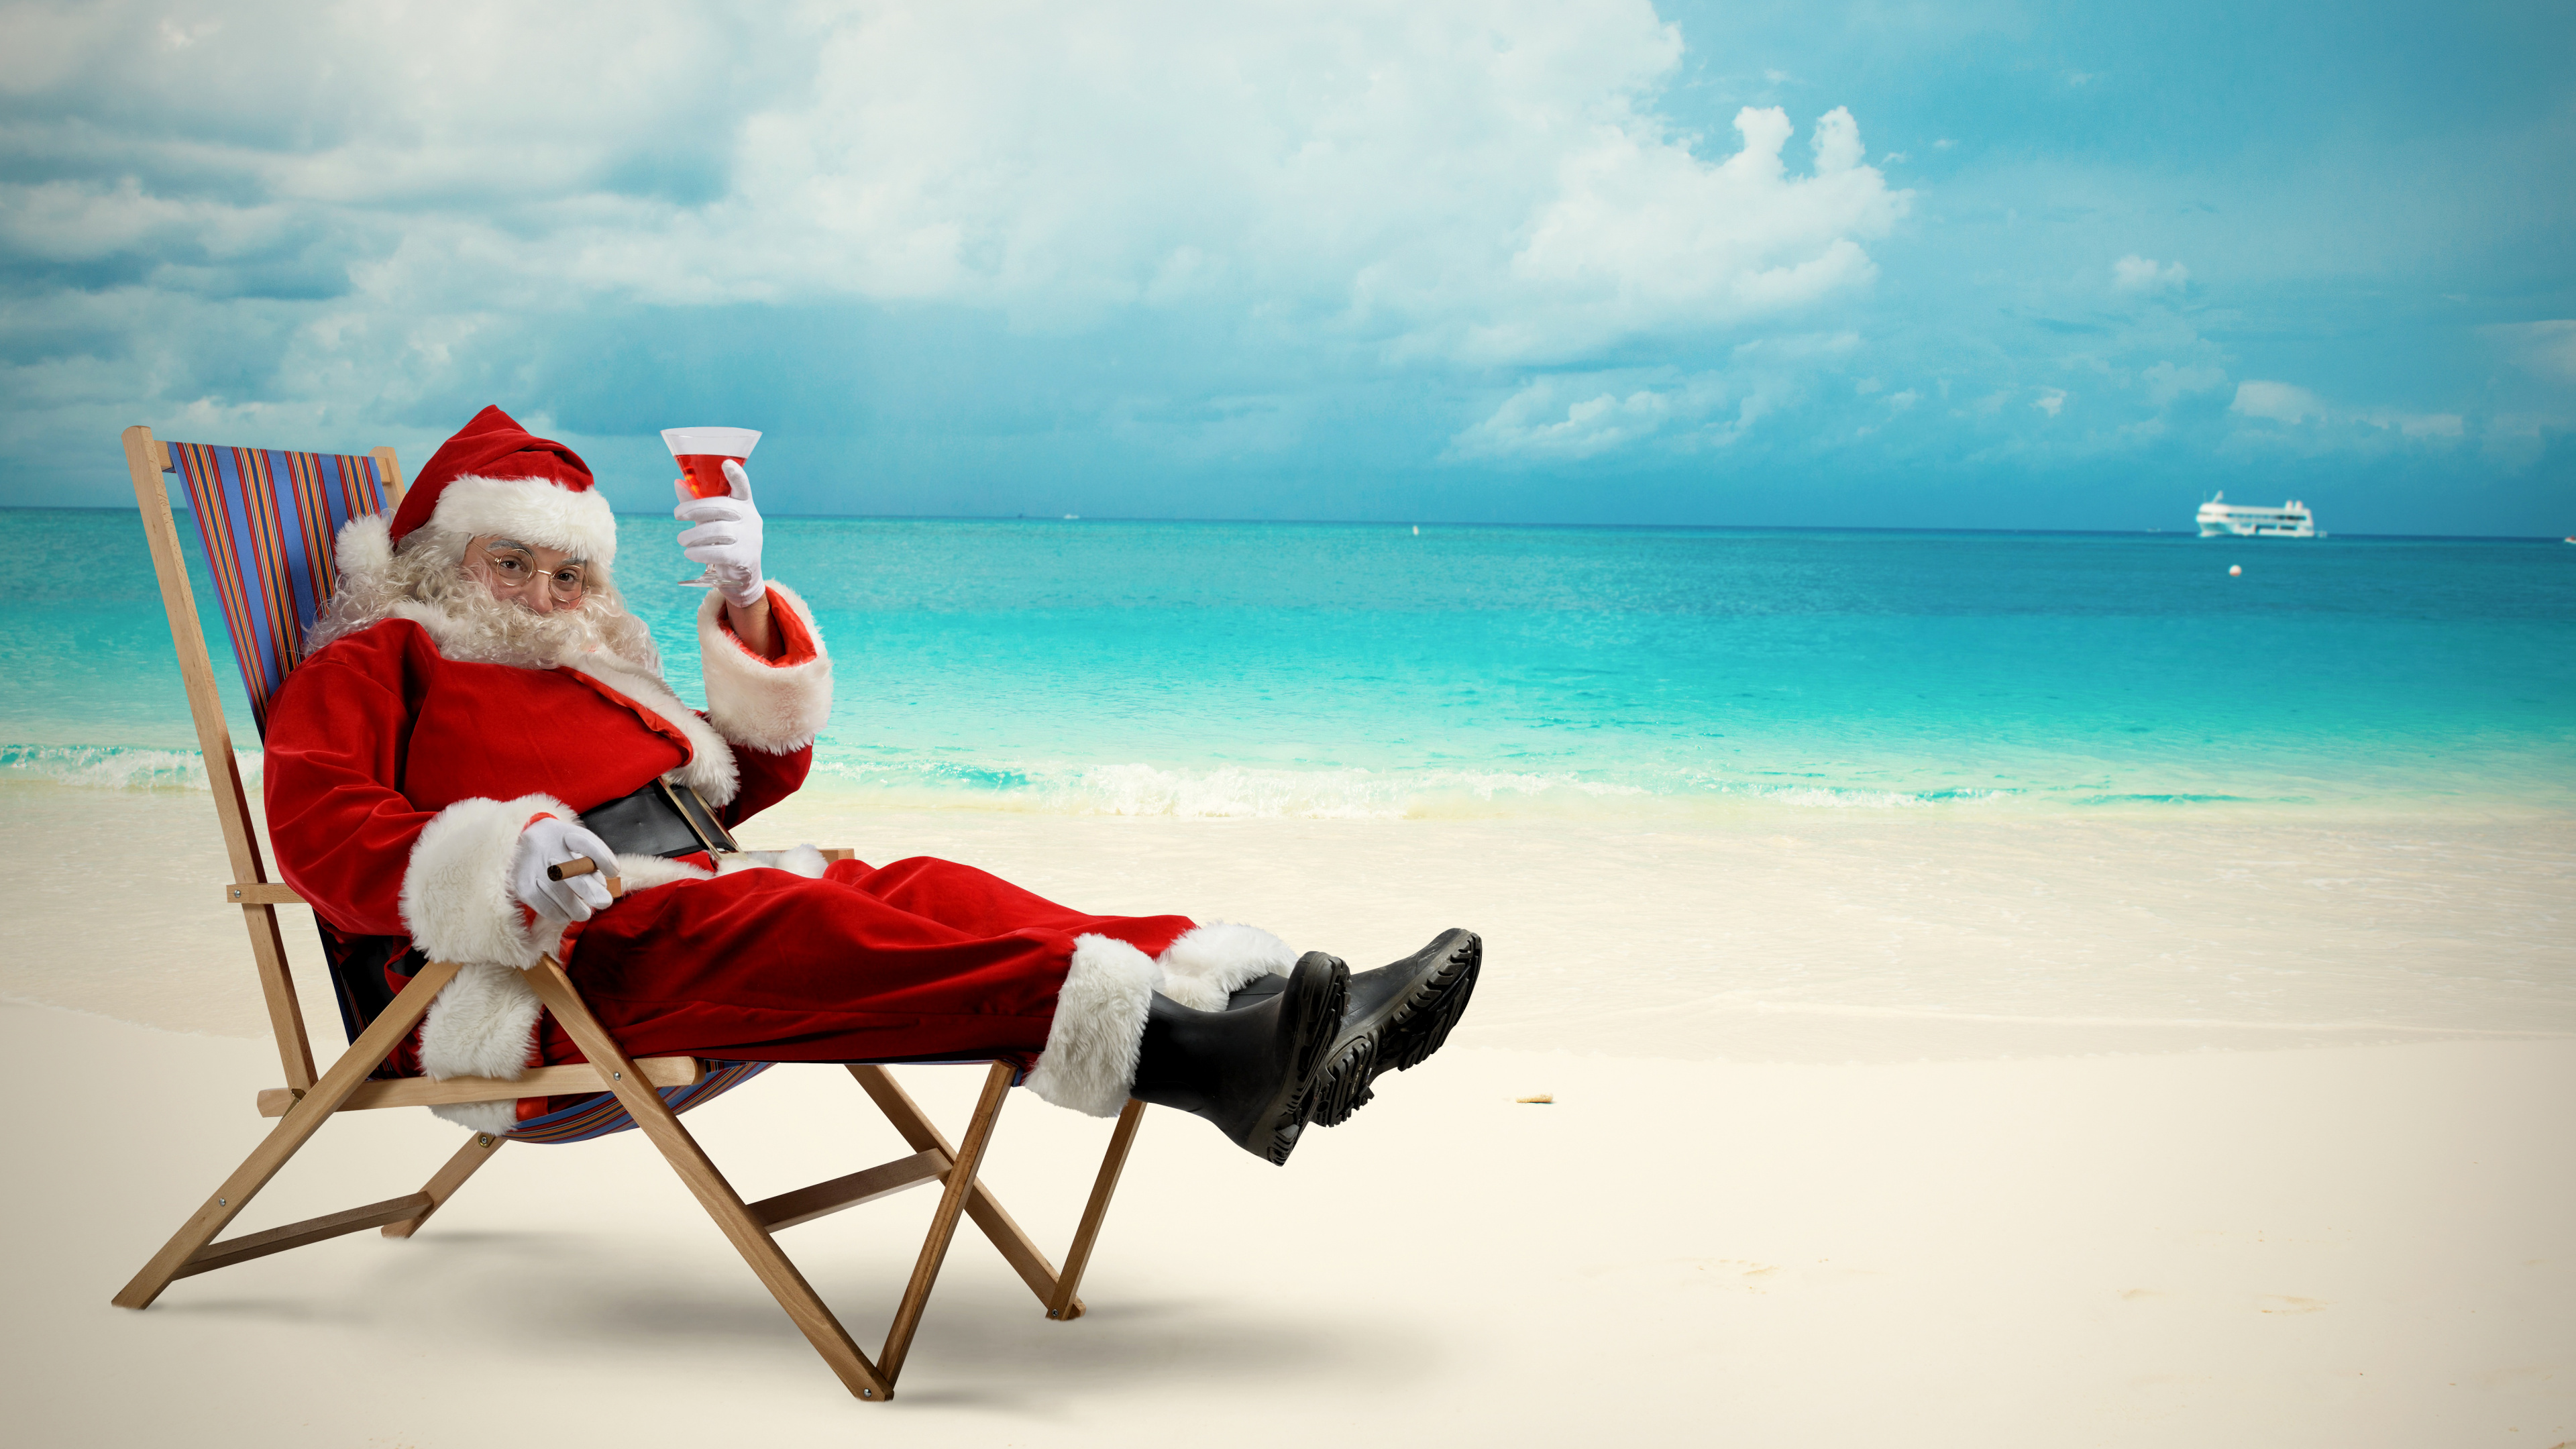 圣诞老人, 圣诞节那天, 大海, 度假, 海洋 壁纸 3840x2160 允许